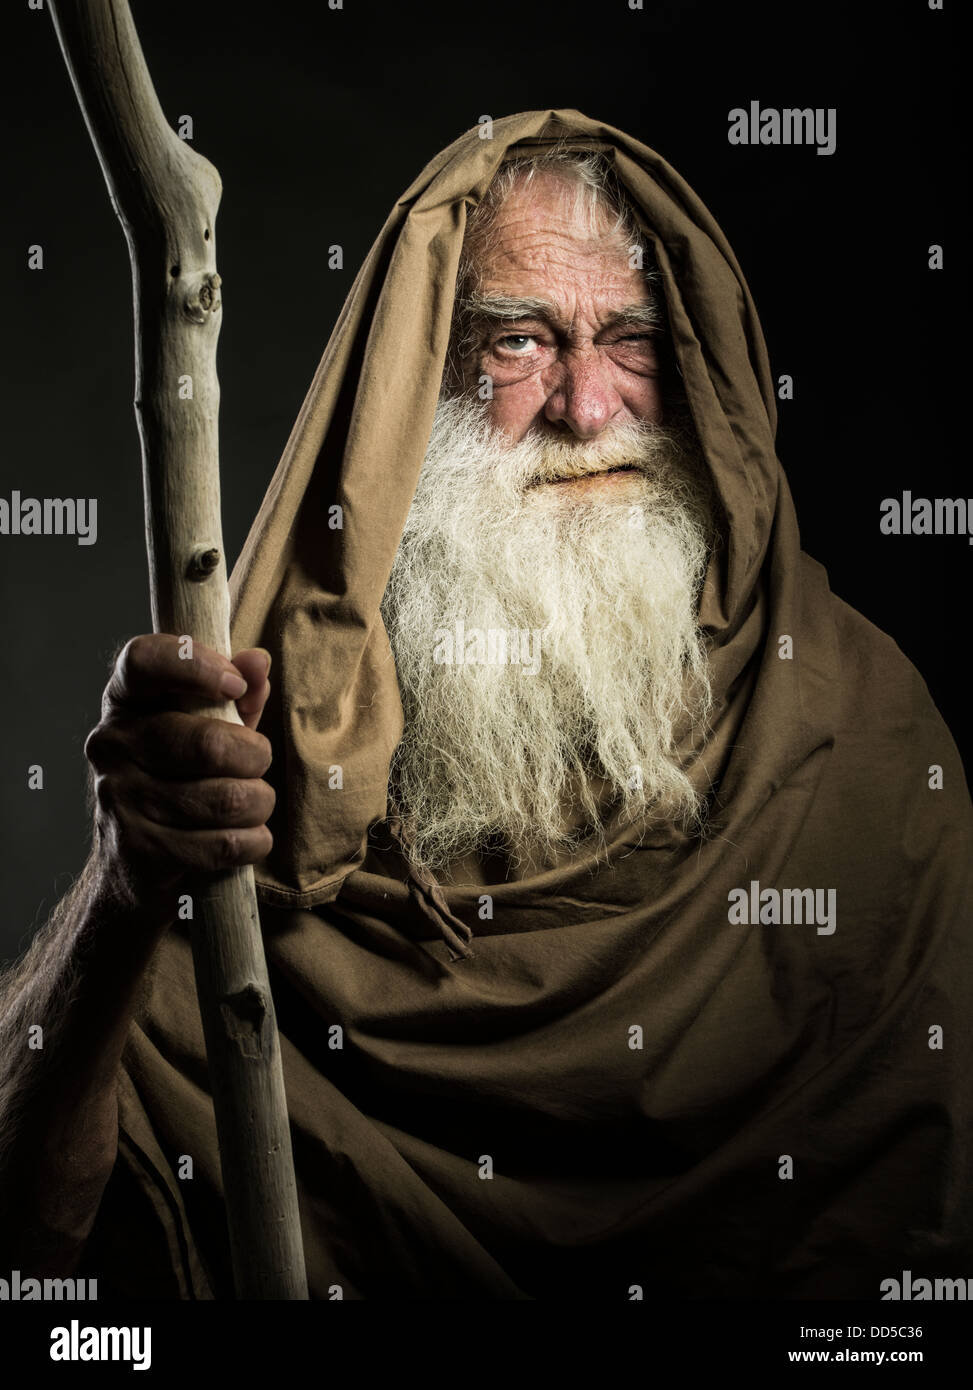 Uomo vecchio con la barba bianca personale e mantello guarda come wizard / Gandalf / Mosè / silente Foto Stock